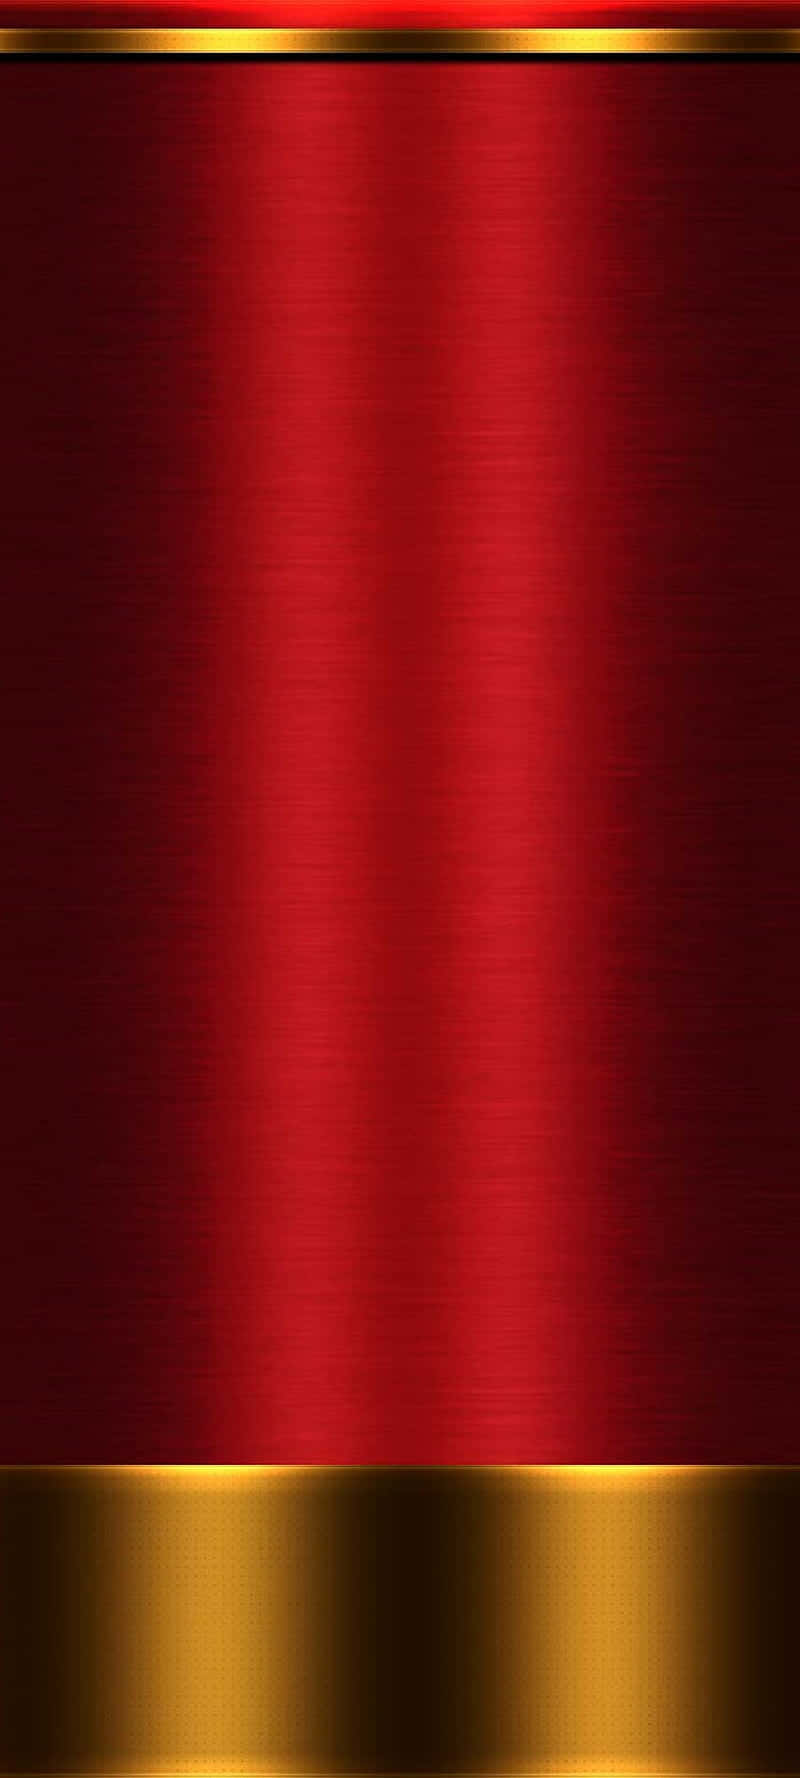 Lys,kraftfuld Rød Og Gul Abstrakt Baggrund.